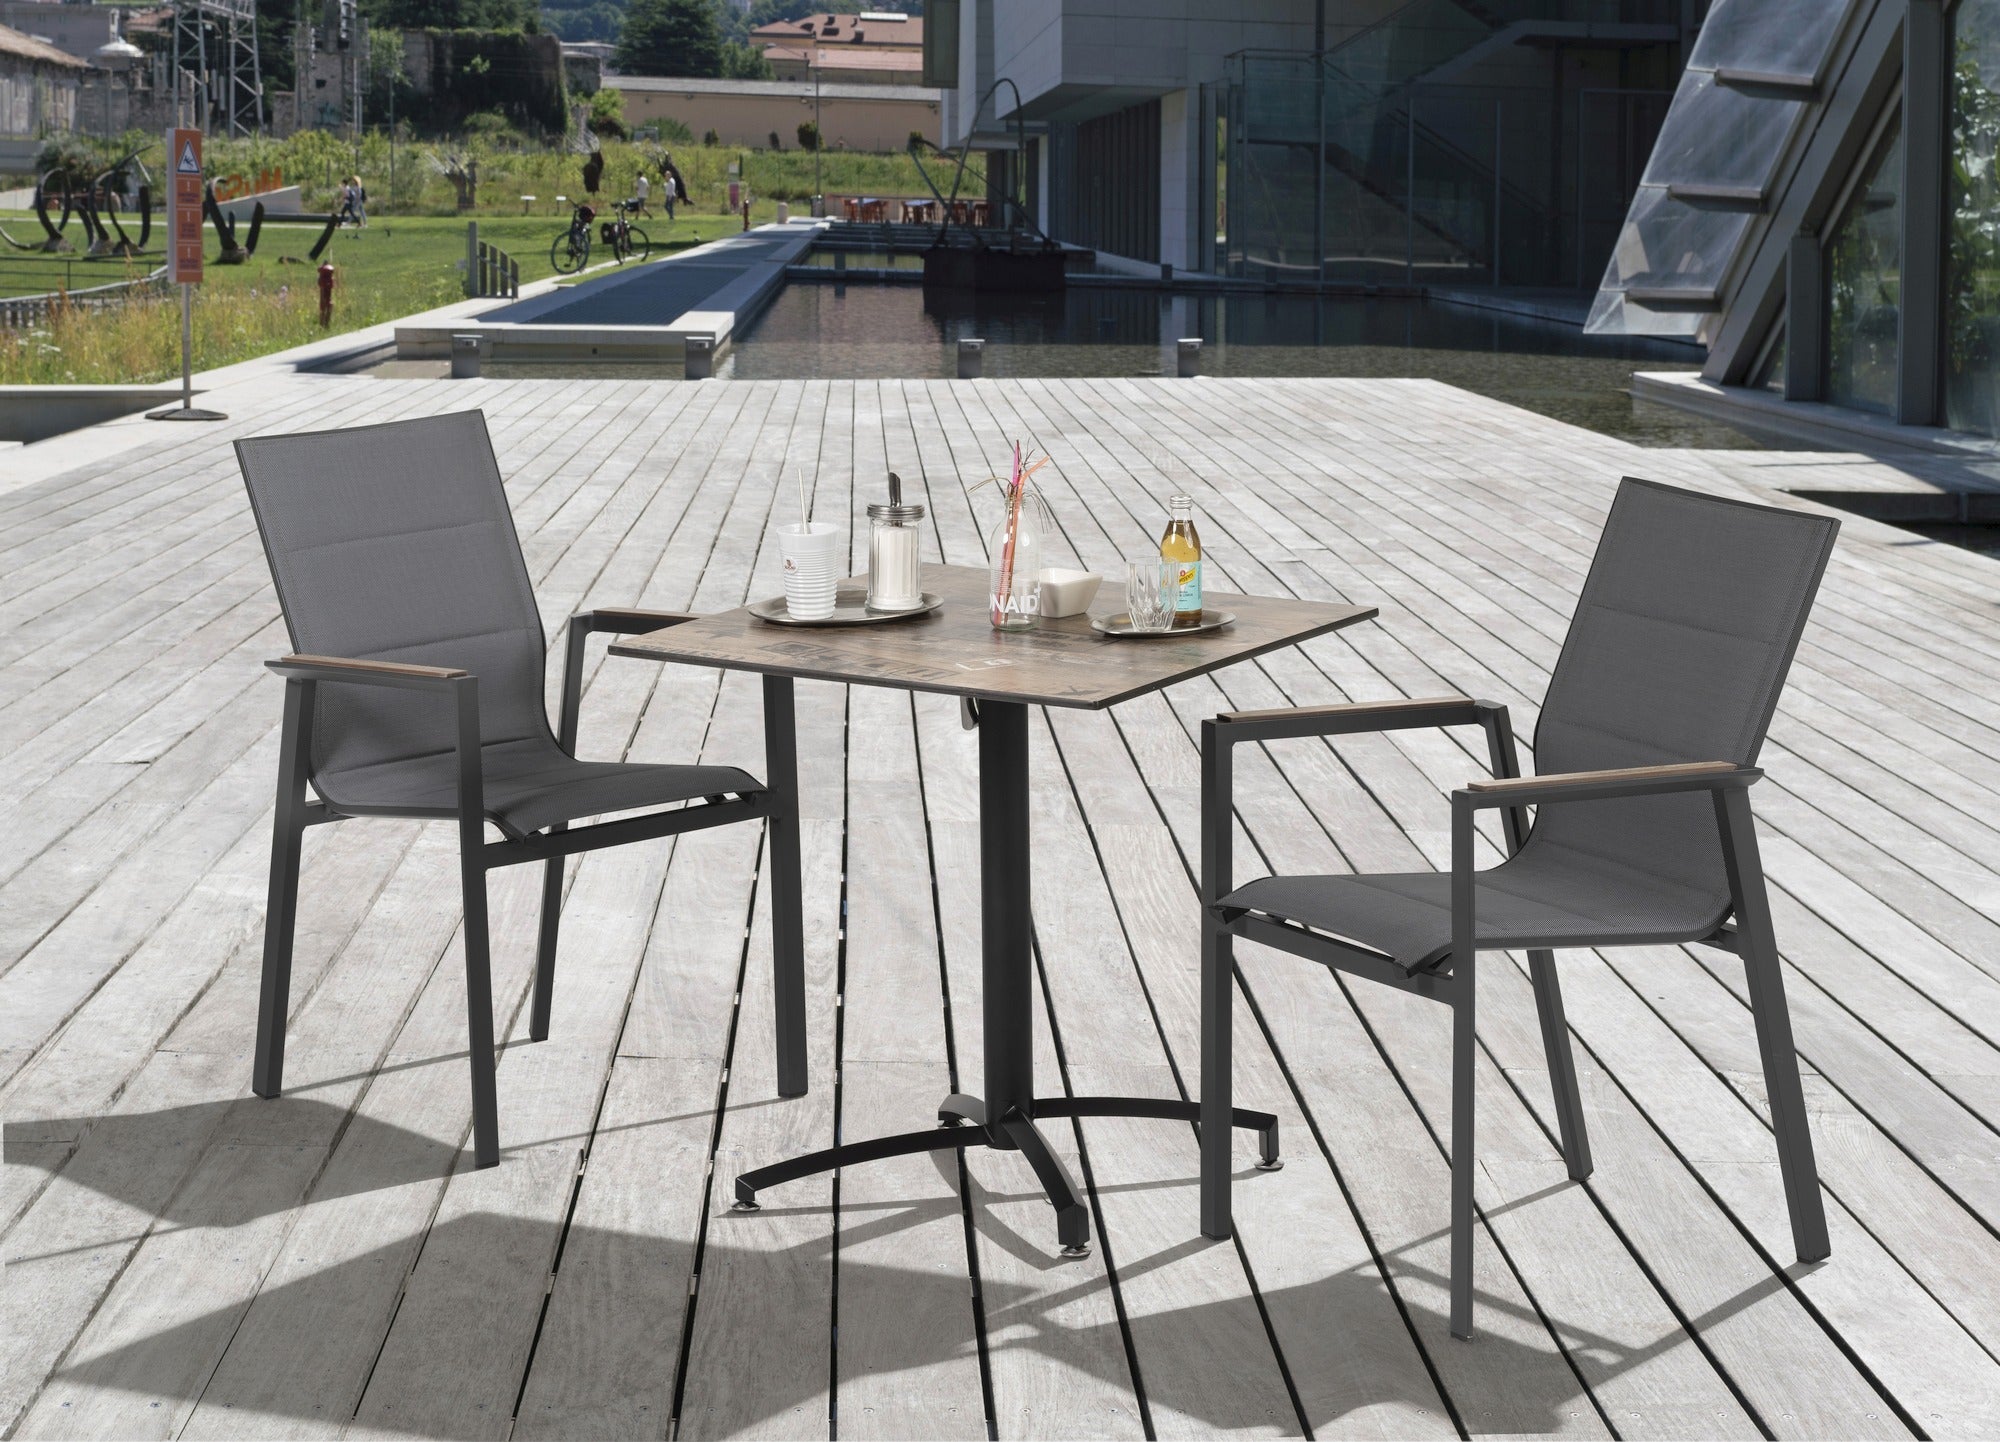 Moderner 'Devin' Gartenstuhl mit strapazierfähigem dunkelgrauem Textilen, leicht gepolstert für zusätzlichen Komfort, mit robustem Metallgestell und Teakholz-Look Polywood-Armstützen, verfügbar bei Gartenmoebelshop.at - Gruppenbild auf einer Terrasse. 2 Armstühle ein Tisch